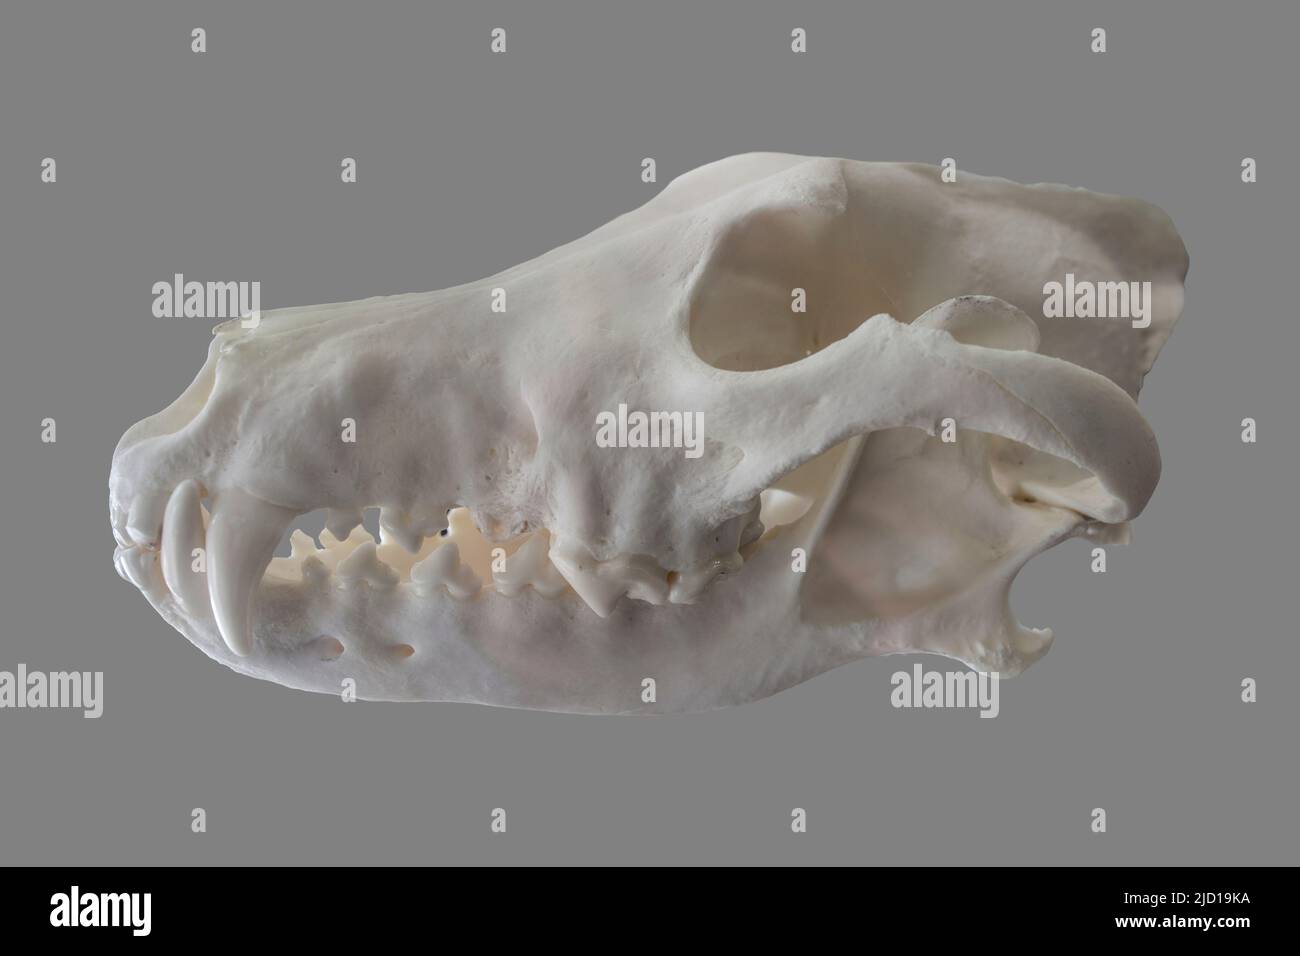 Iberian lupo cranio anche chiamato canis lupus signatus. Isolato su sfondo grigio Foto Stock